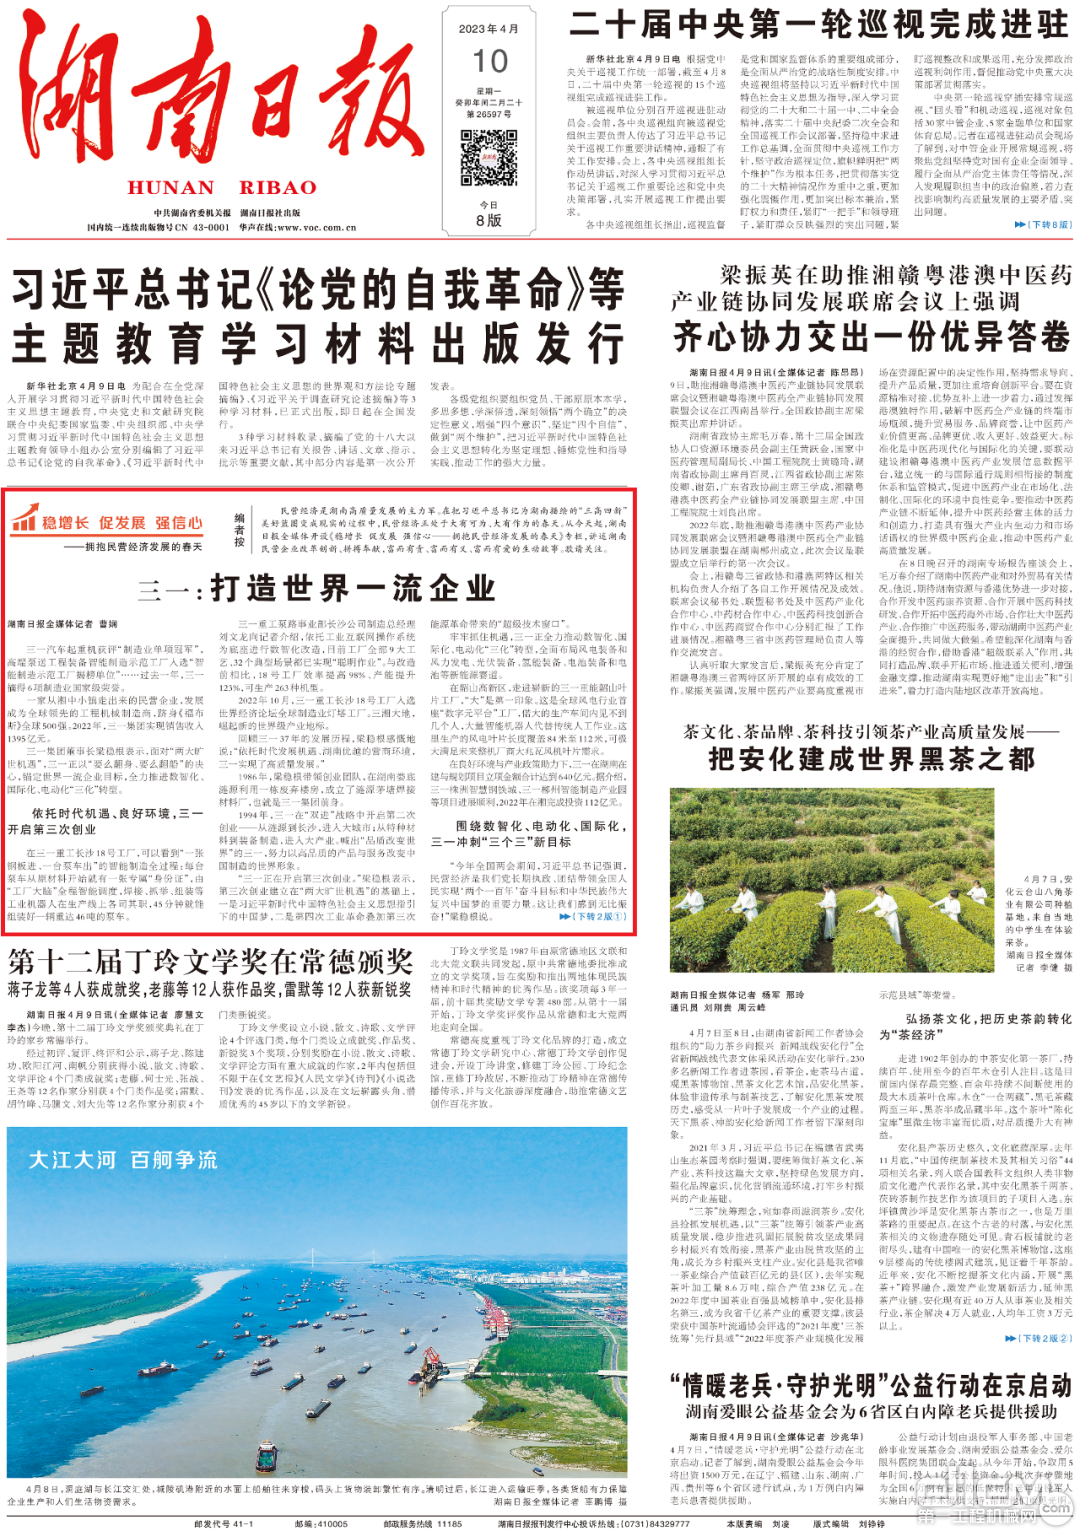 湖南日报头版刊登《三一：打造世界一流企业》